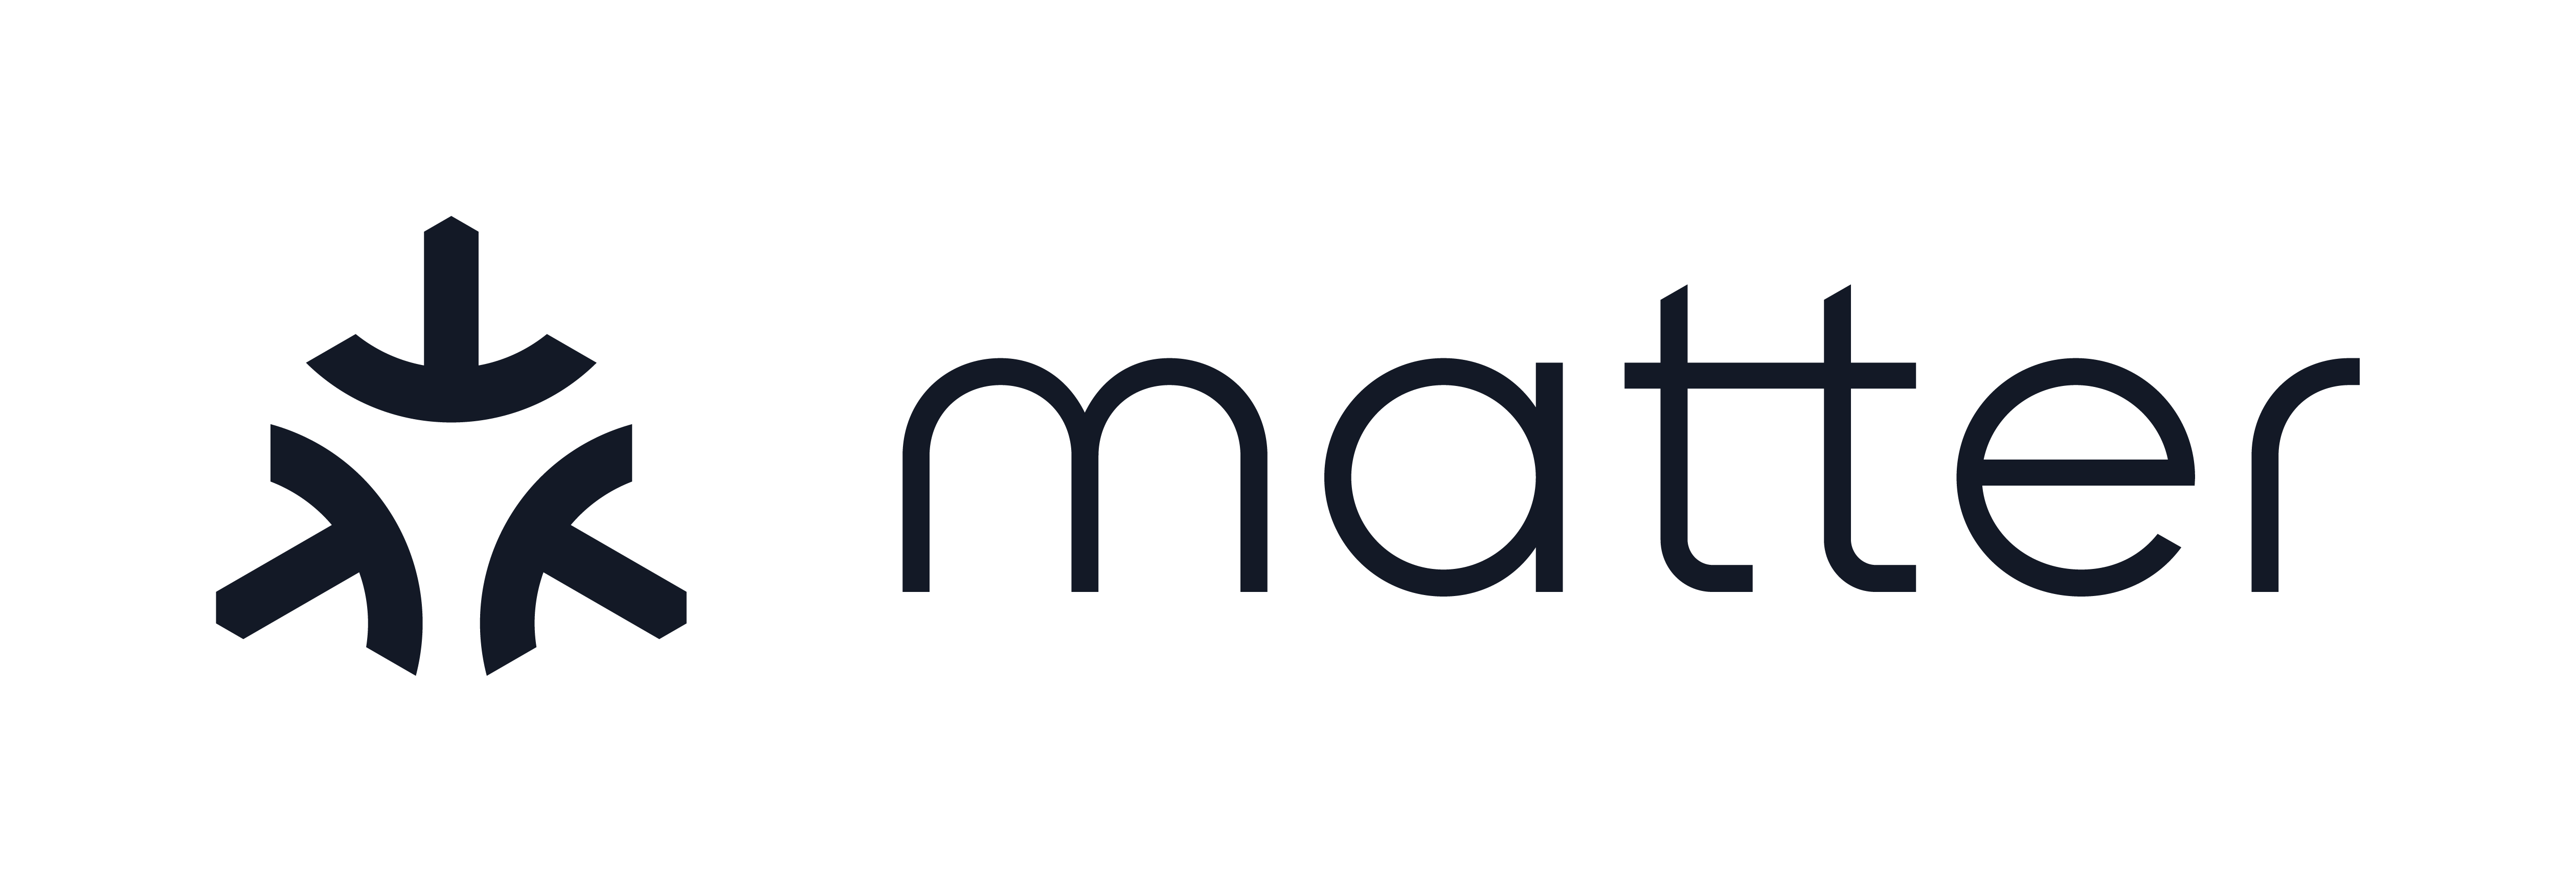 The Matter logo.